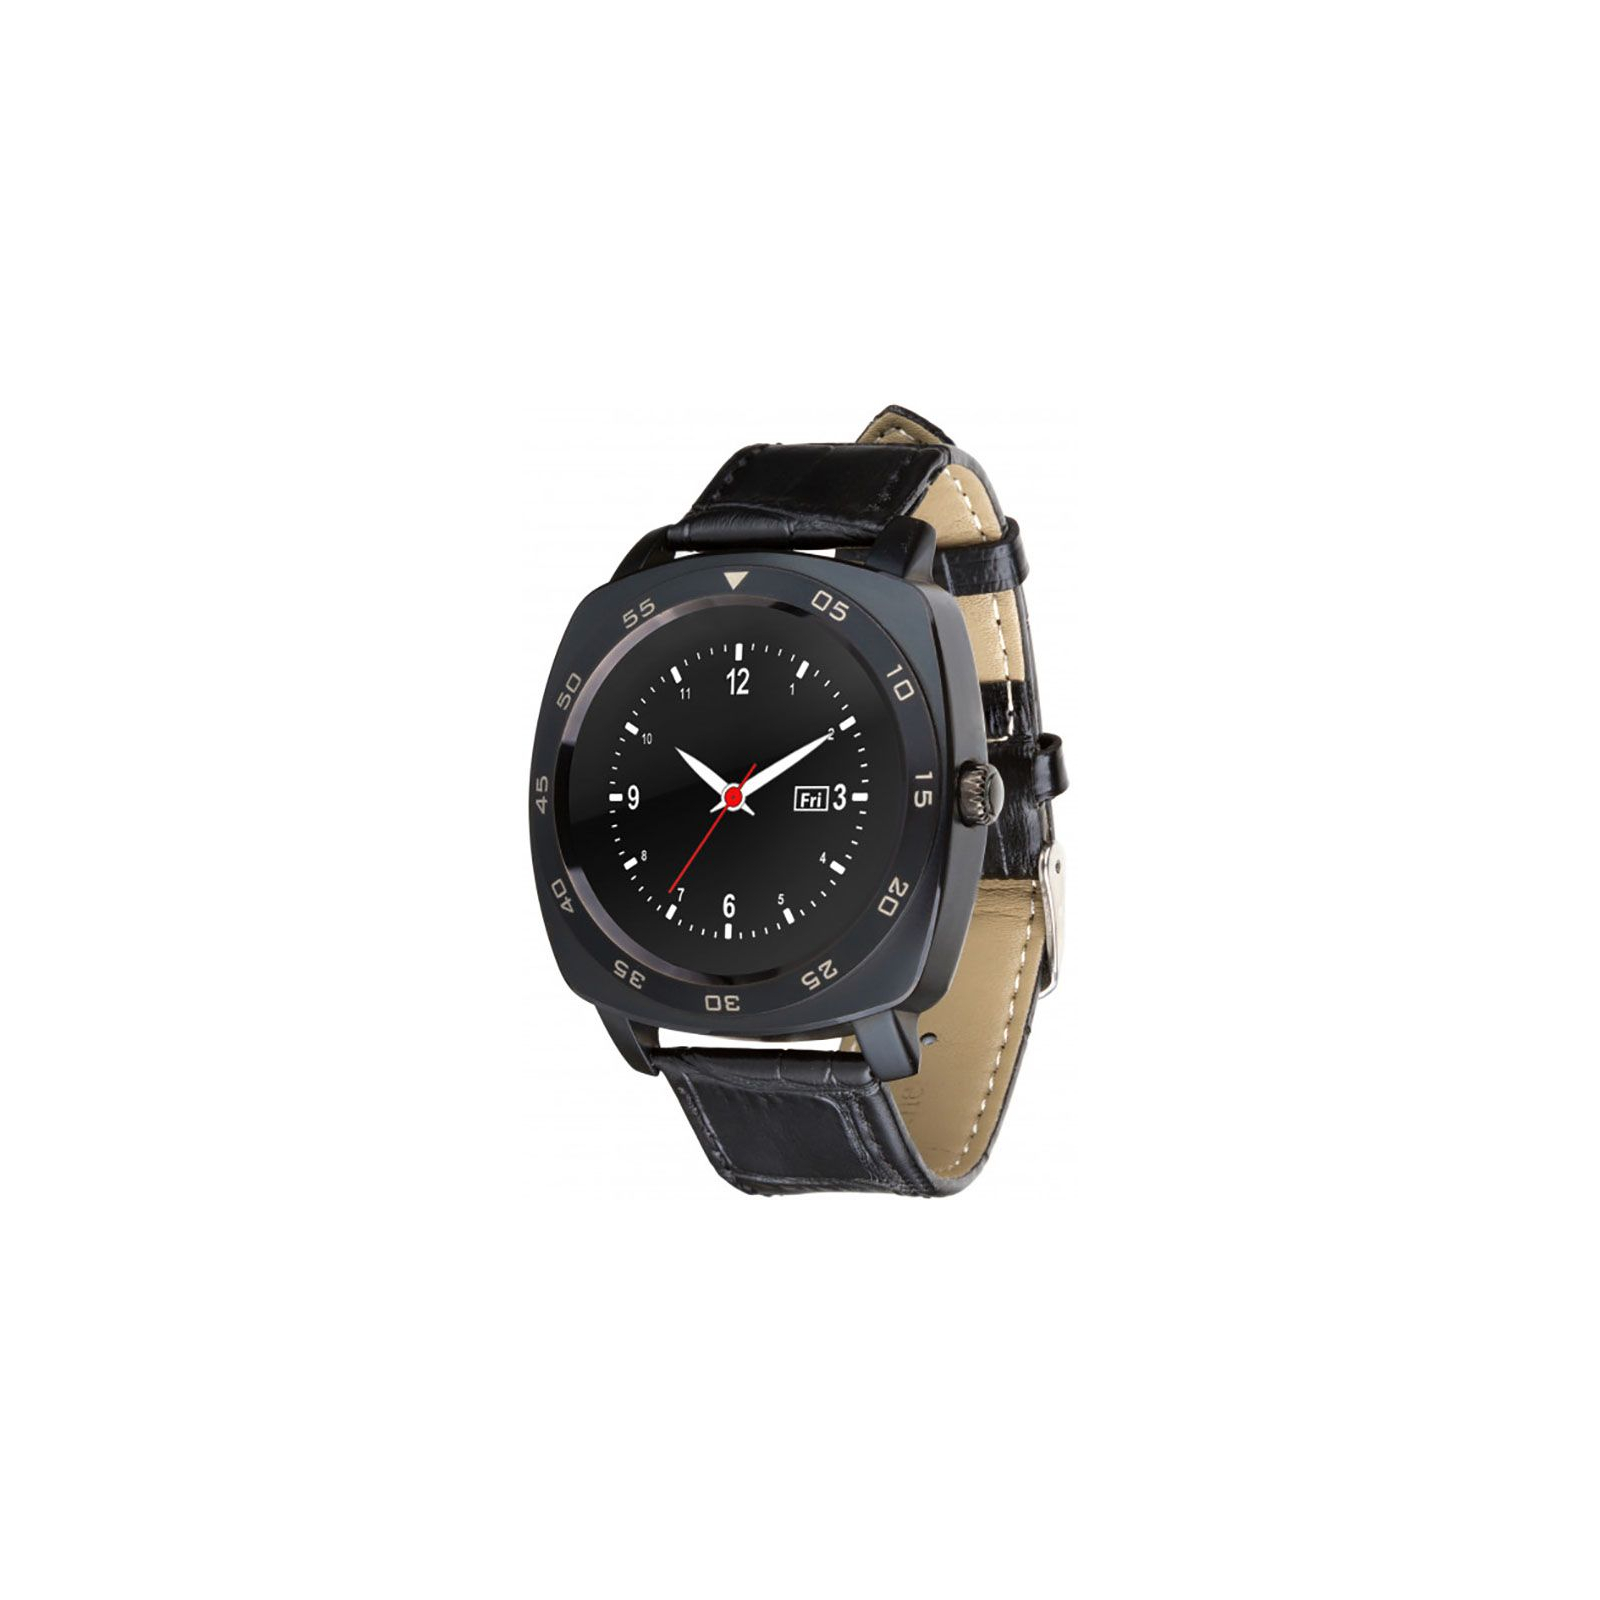 Смарт-часы UWatch X3 Black (F_52787)